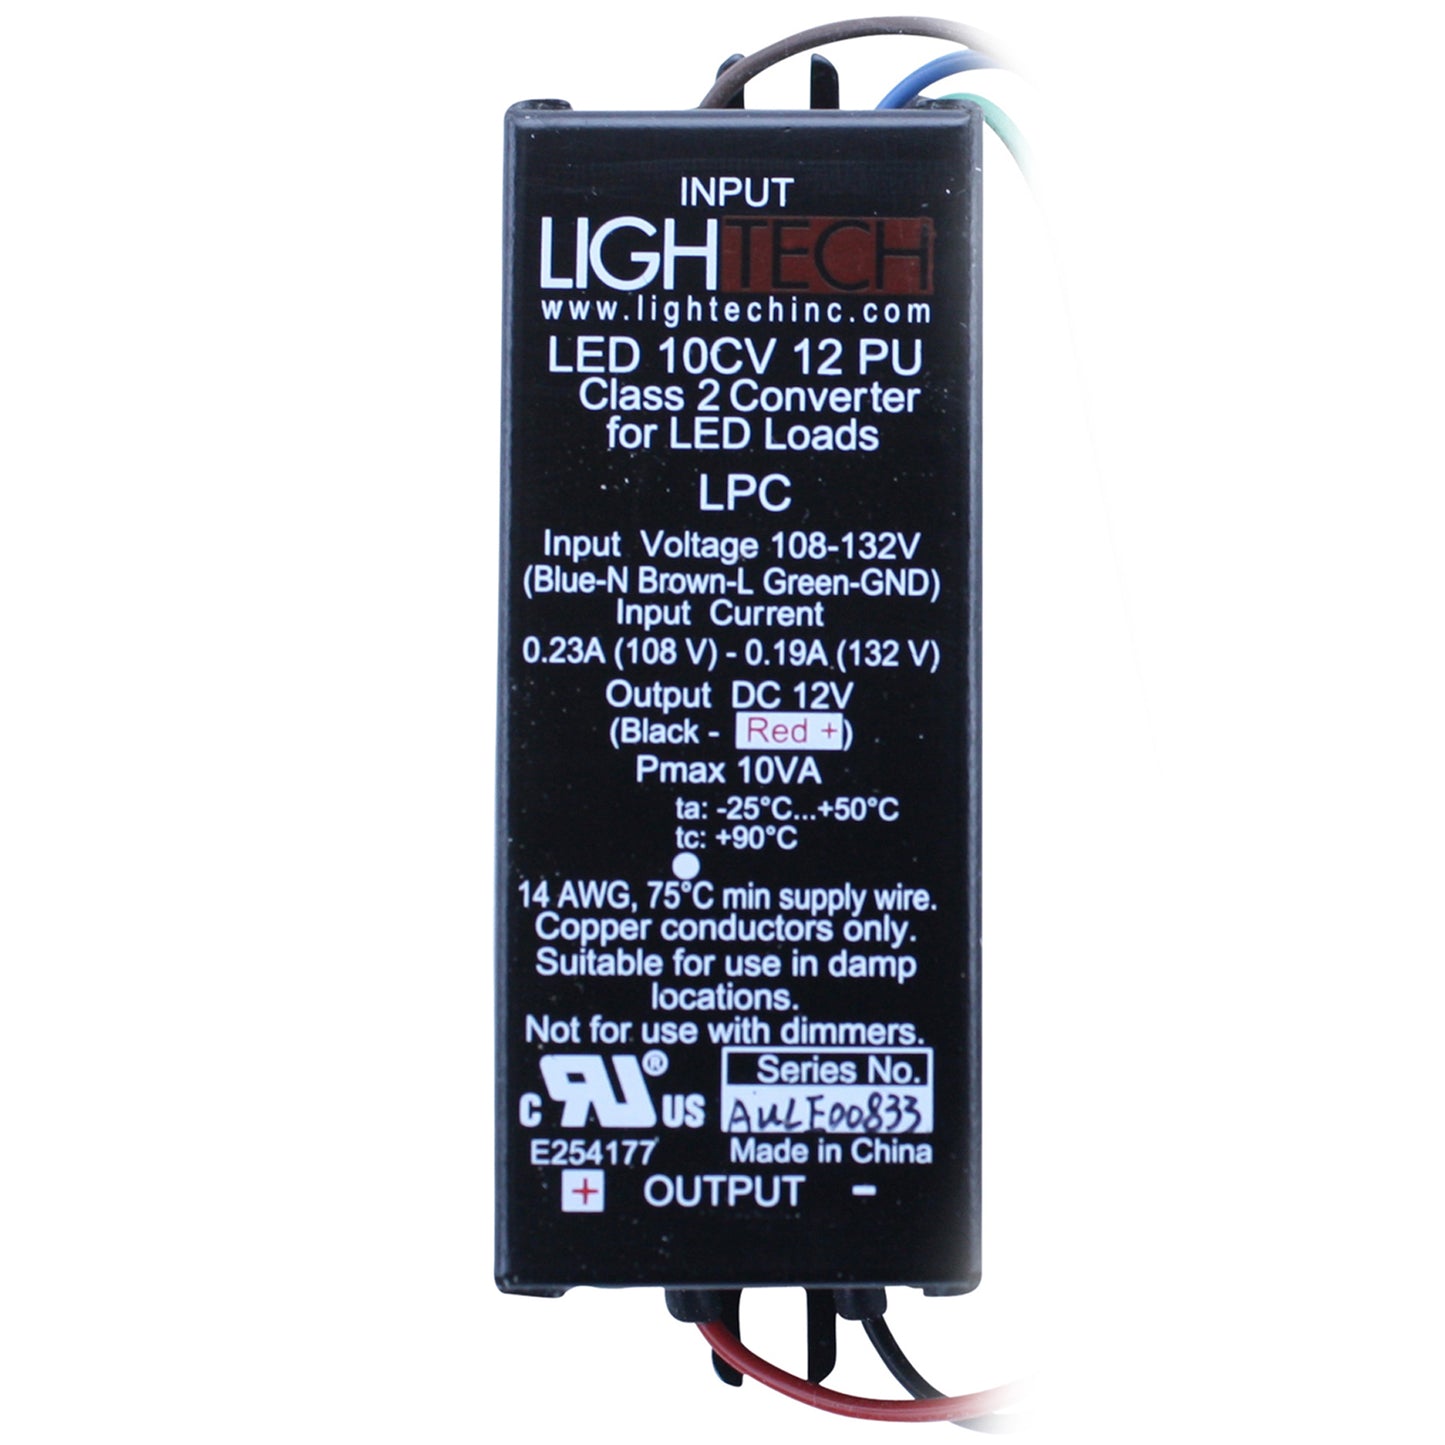 Lightech LED-10CV-12-PU